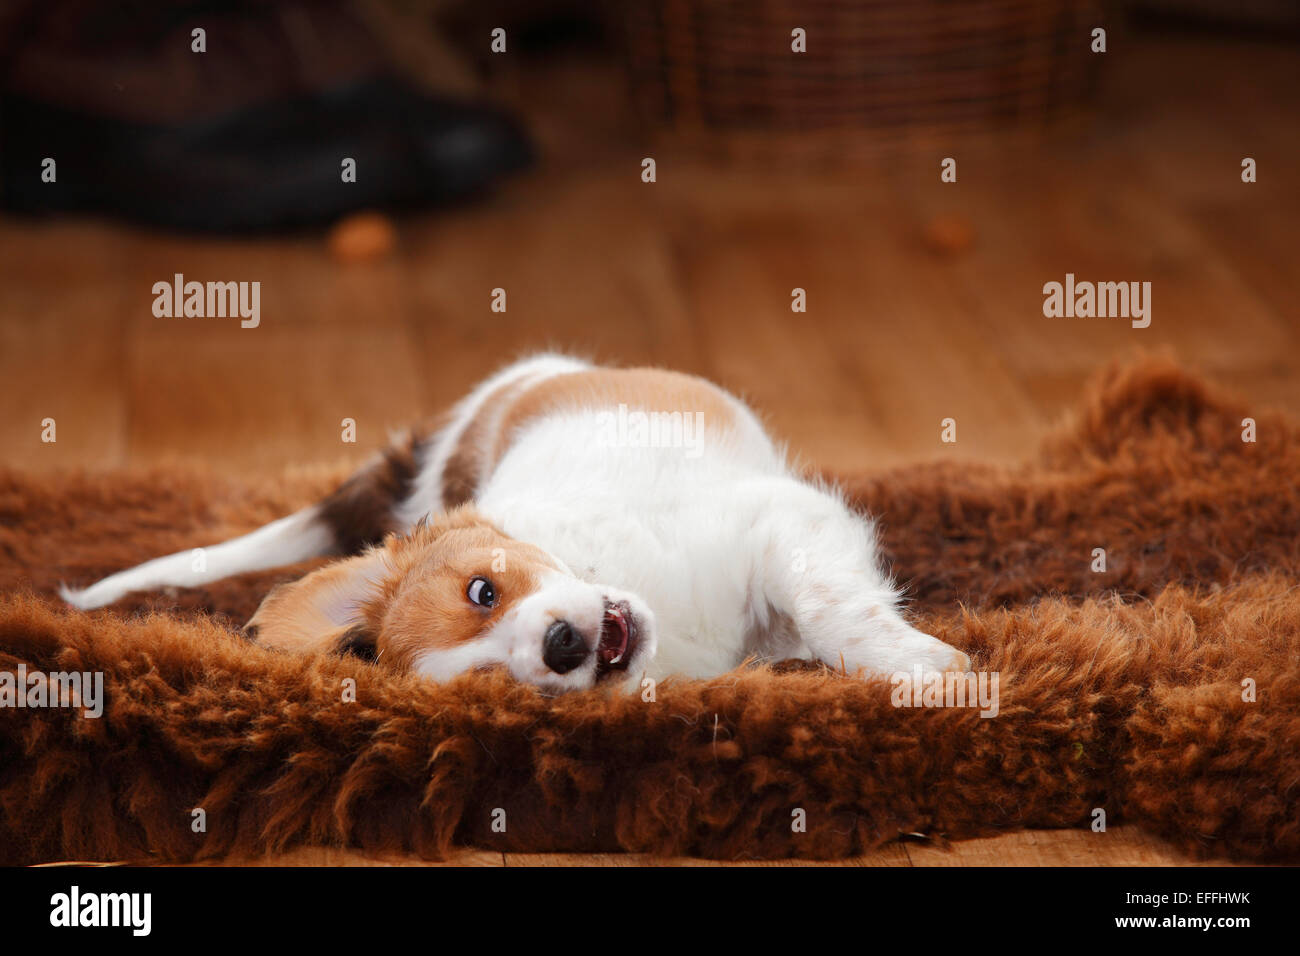 Kooikerhondje puppy rolling around on sheepskin Stock Photo